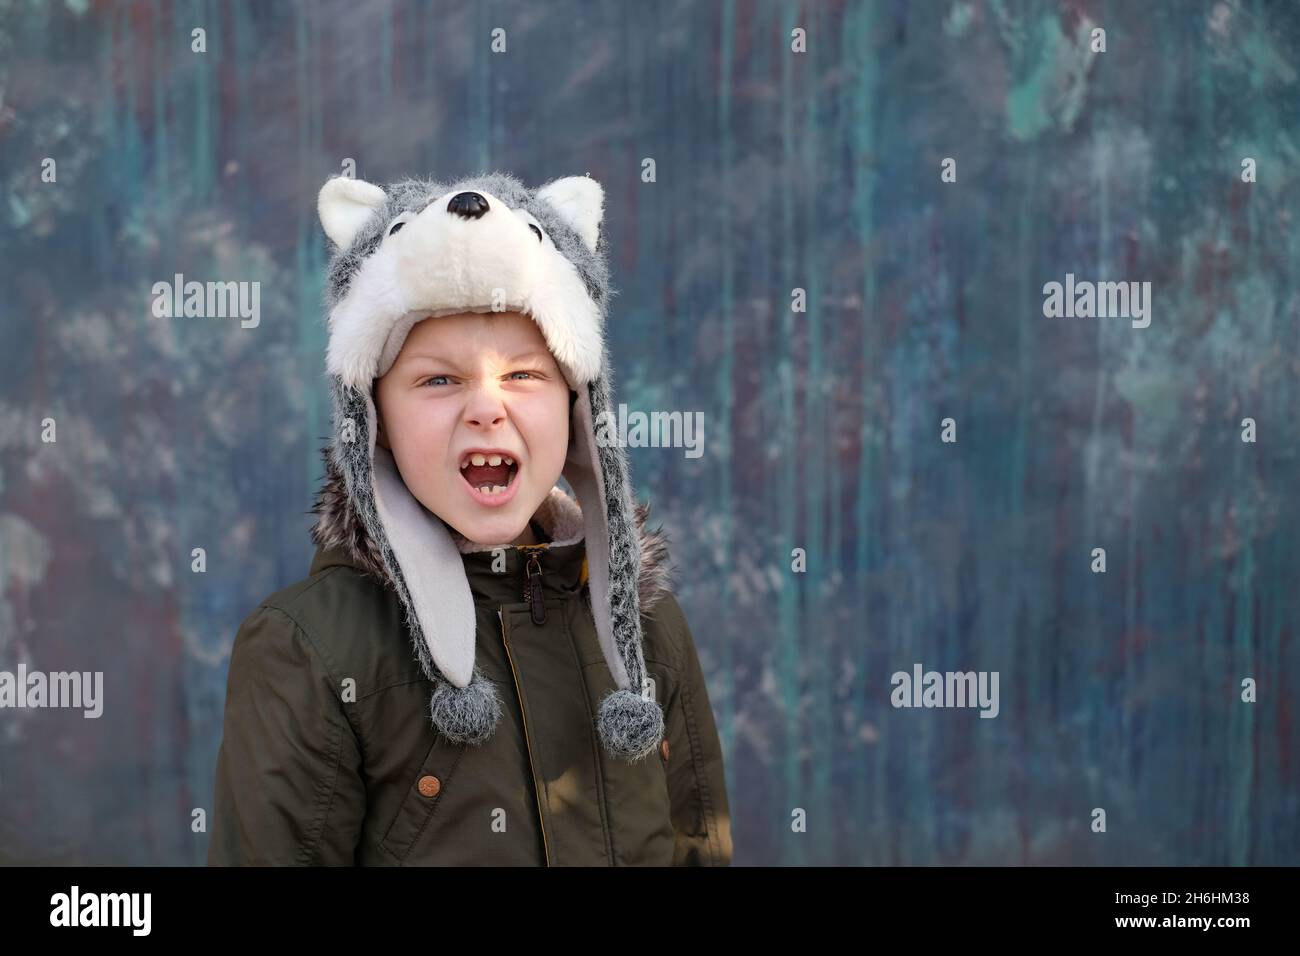 Il ruggito di un lupo. Bambino in un cappello lupo su sfondo grigio, all'aperto. Foto di alta qualità Foto Stock